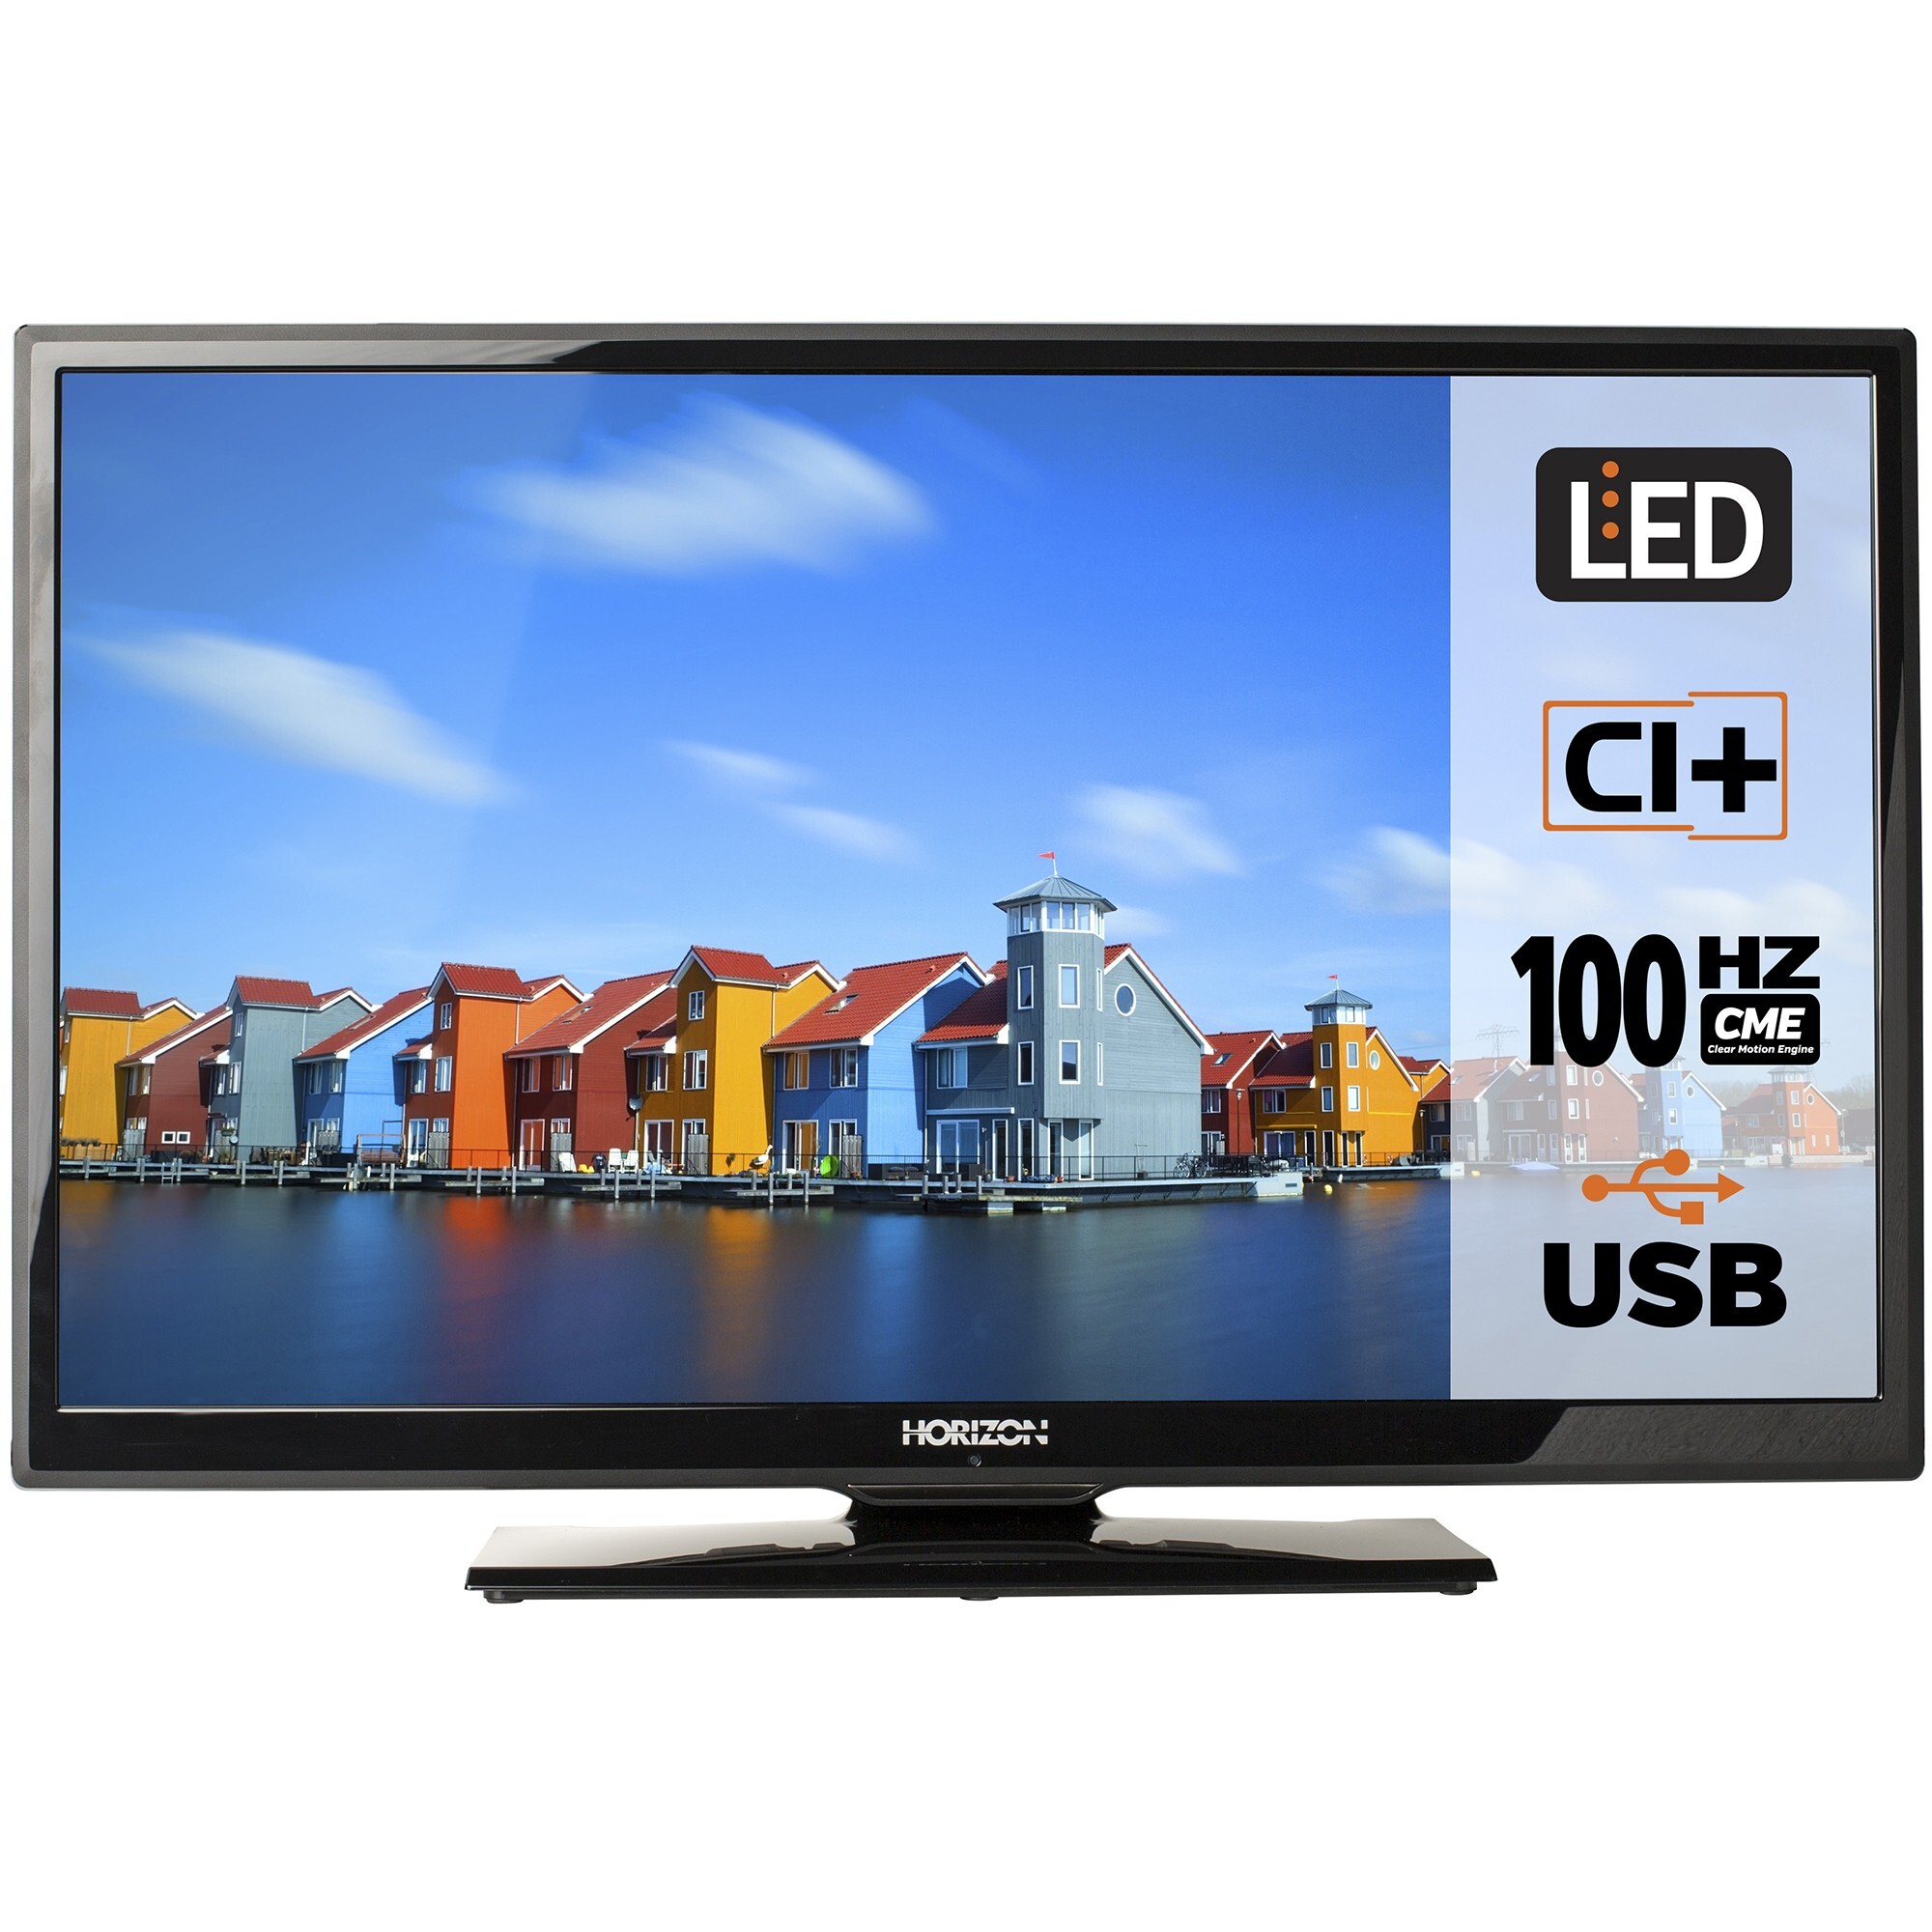 Seraph U.S. dollar Run Televizor LED Horizon 32" 32HL705 1366x768 HDMI Slot CI+ USB Player - Bocris